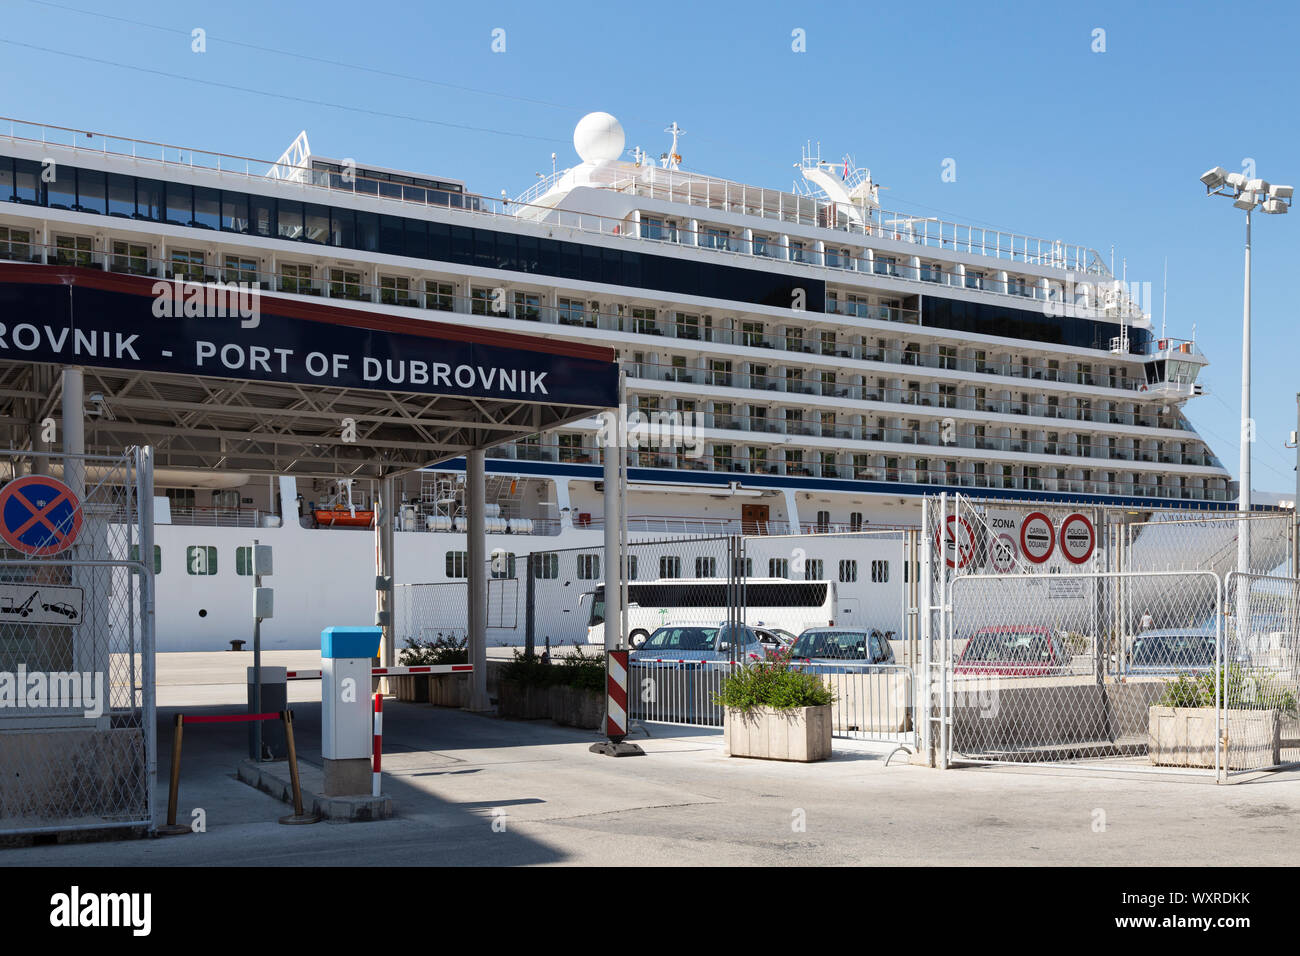 Dubrovnik crucero - un gran crucero amarrado en el puerto de Dubrovnik, Croacia Europa Foto de stock